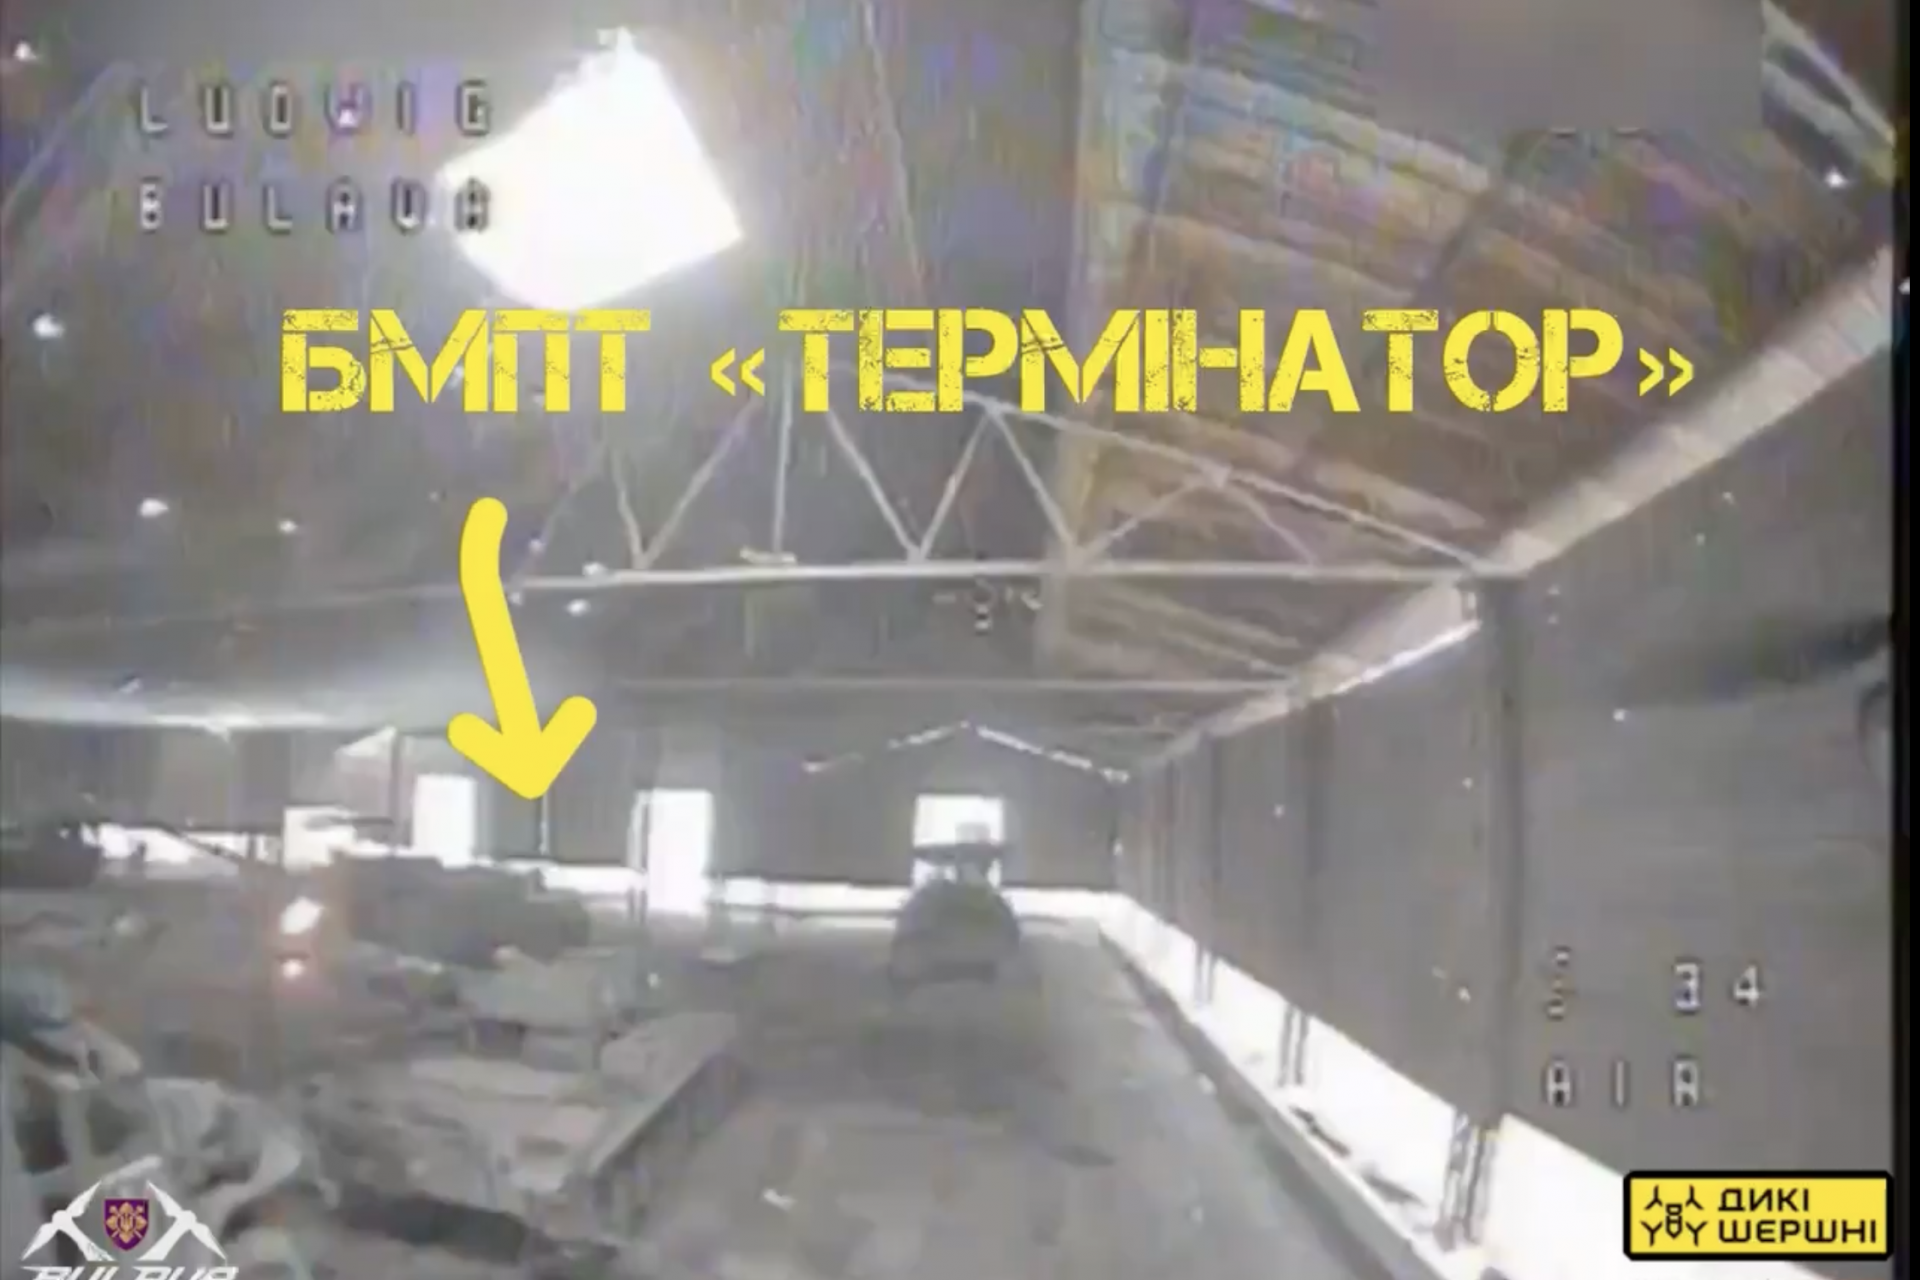 Ein BMPT-Terminator wurde von einer Drohne getroffen